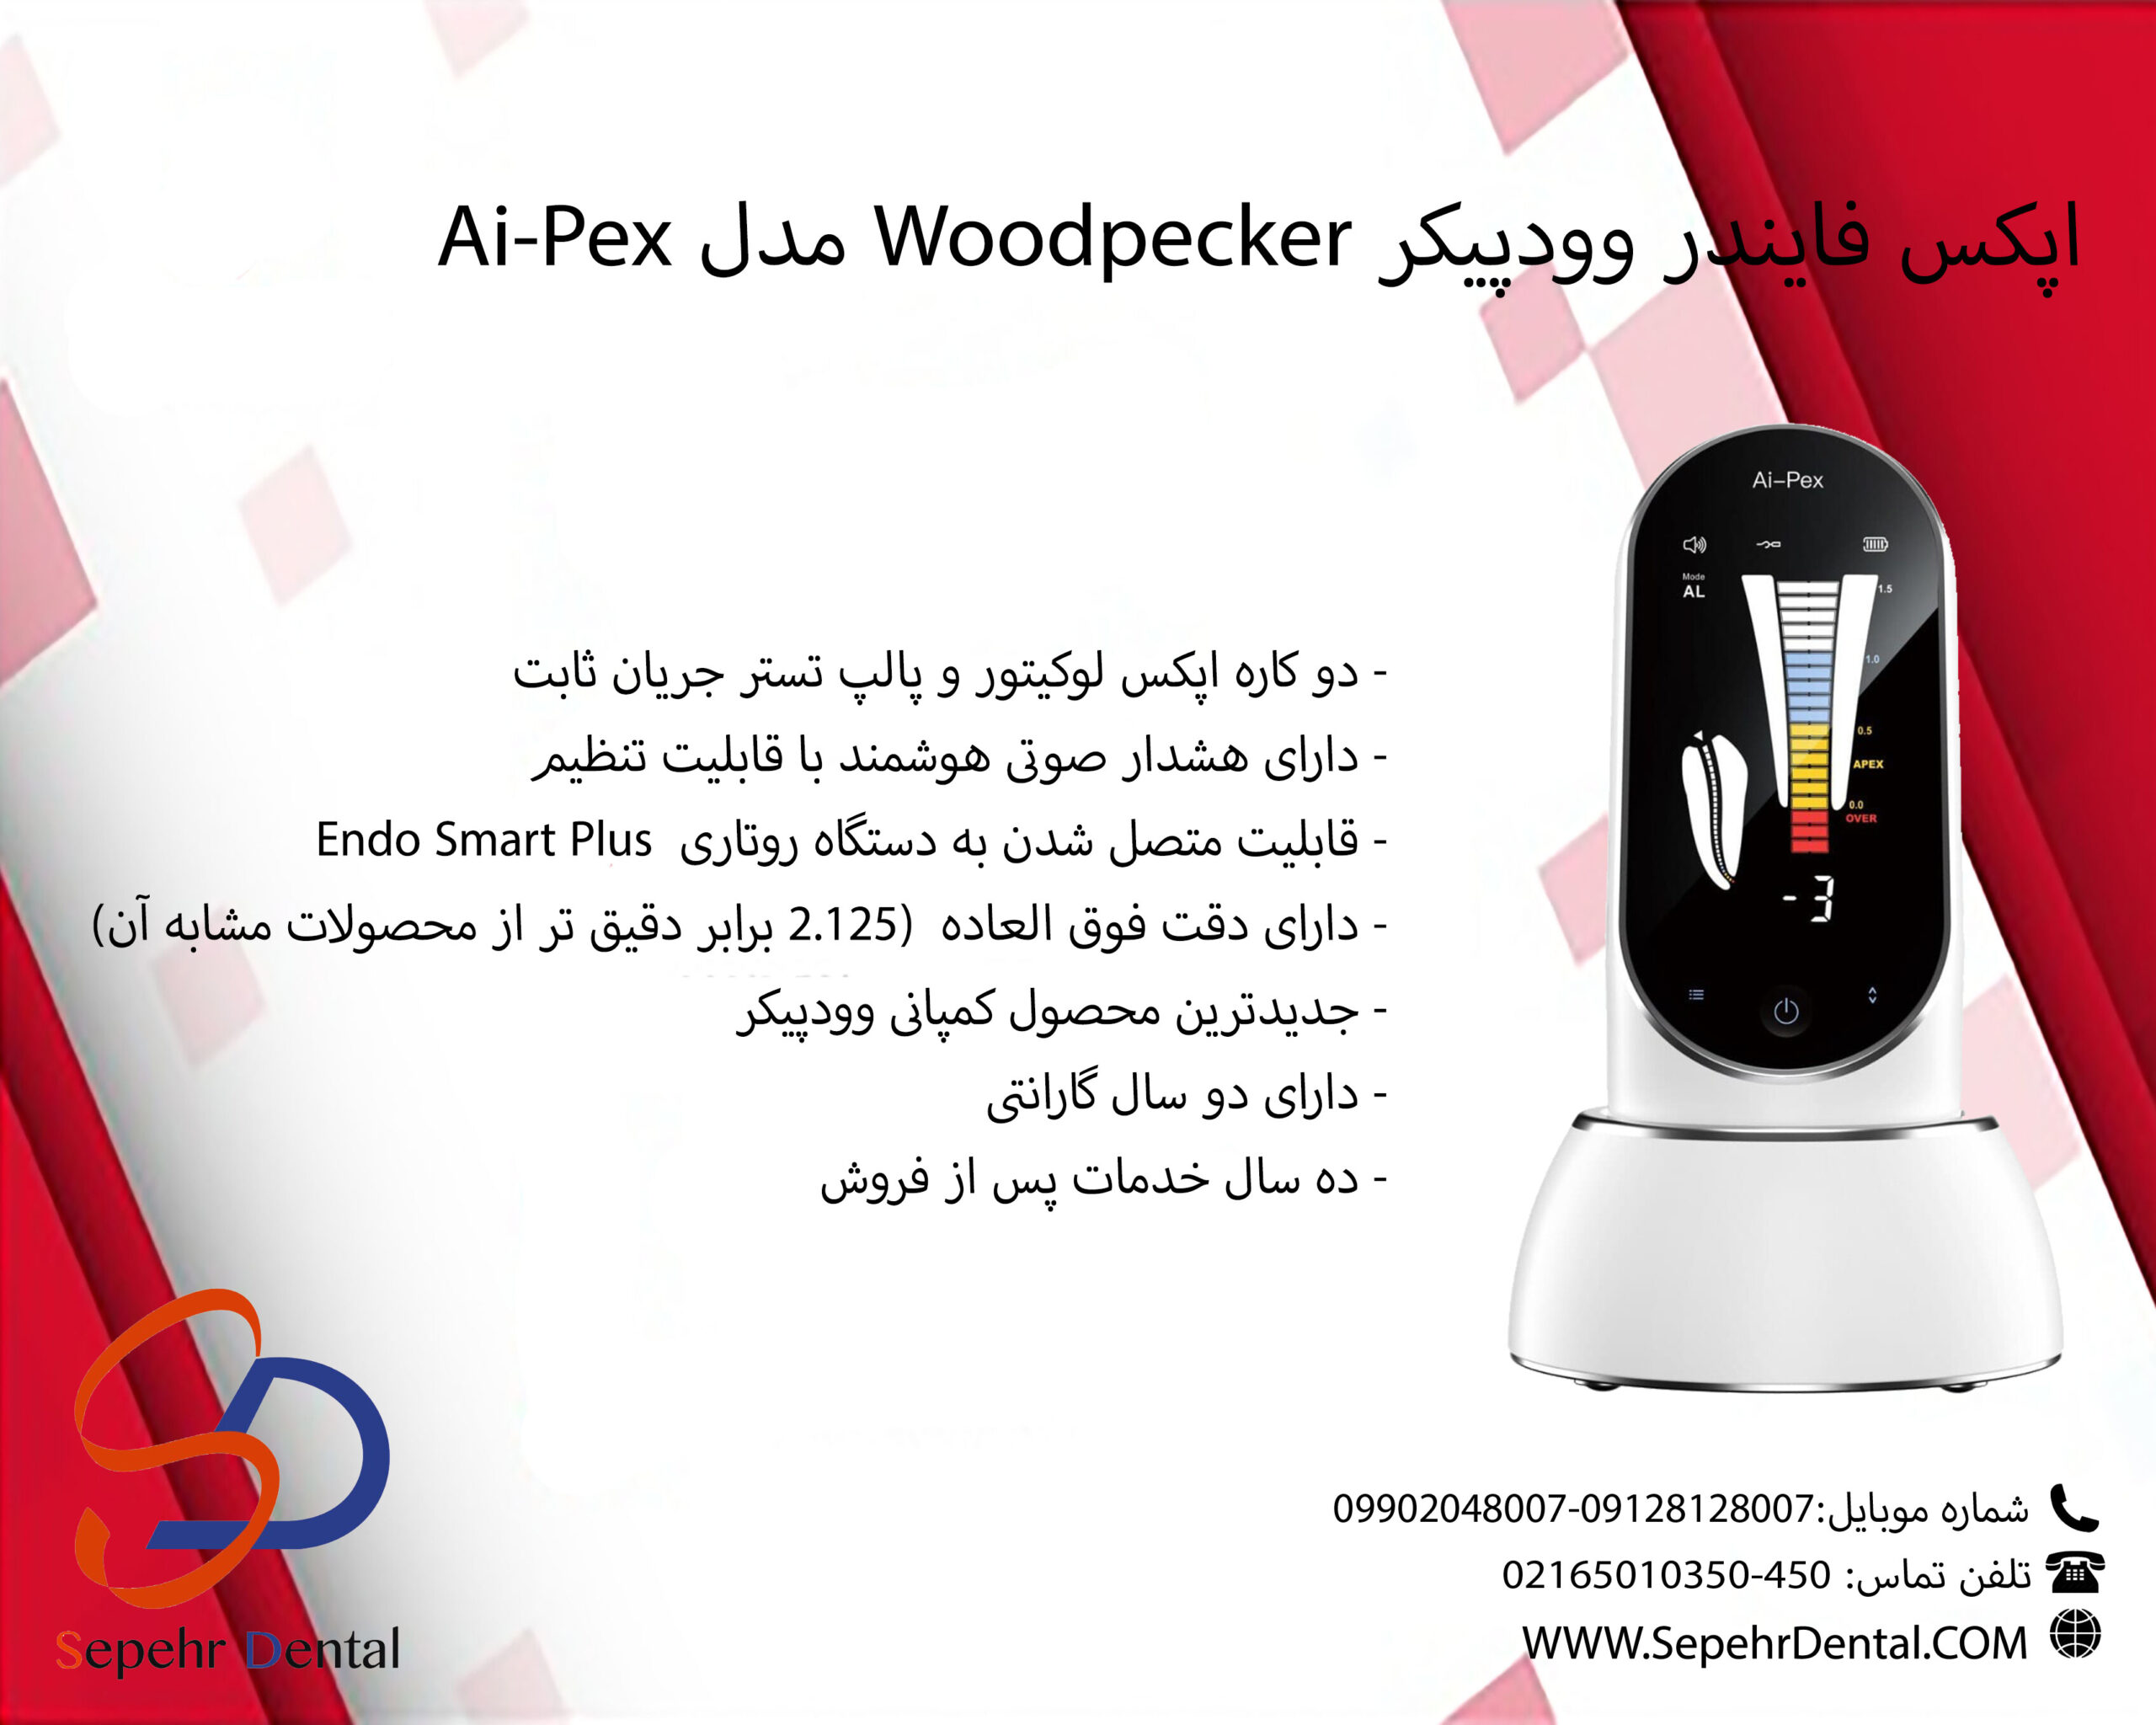 اپکس فایندر وودپیکر Woodpecker مدل Ai Pex